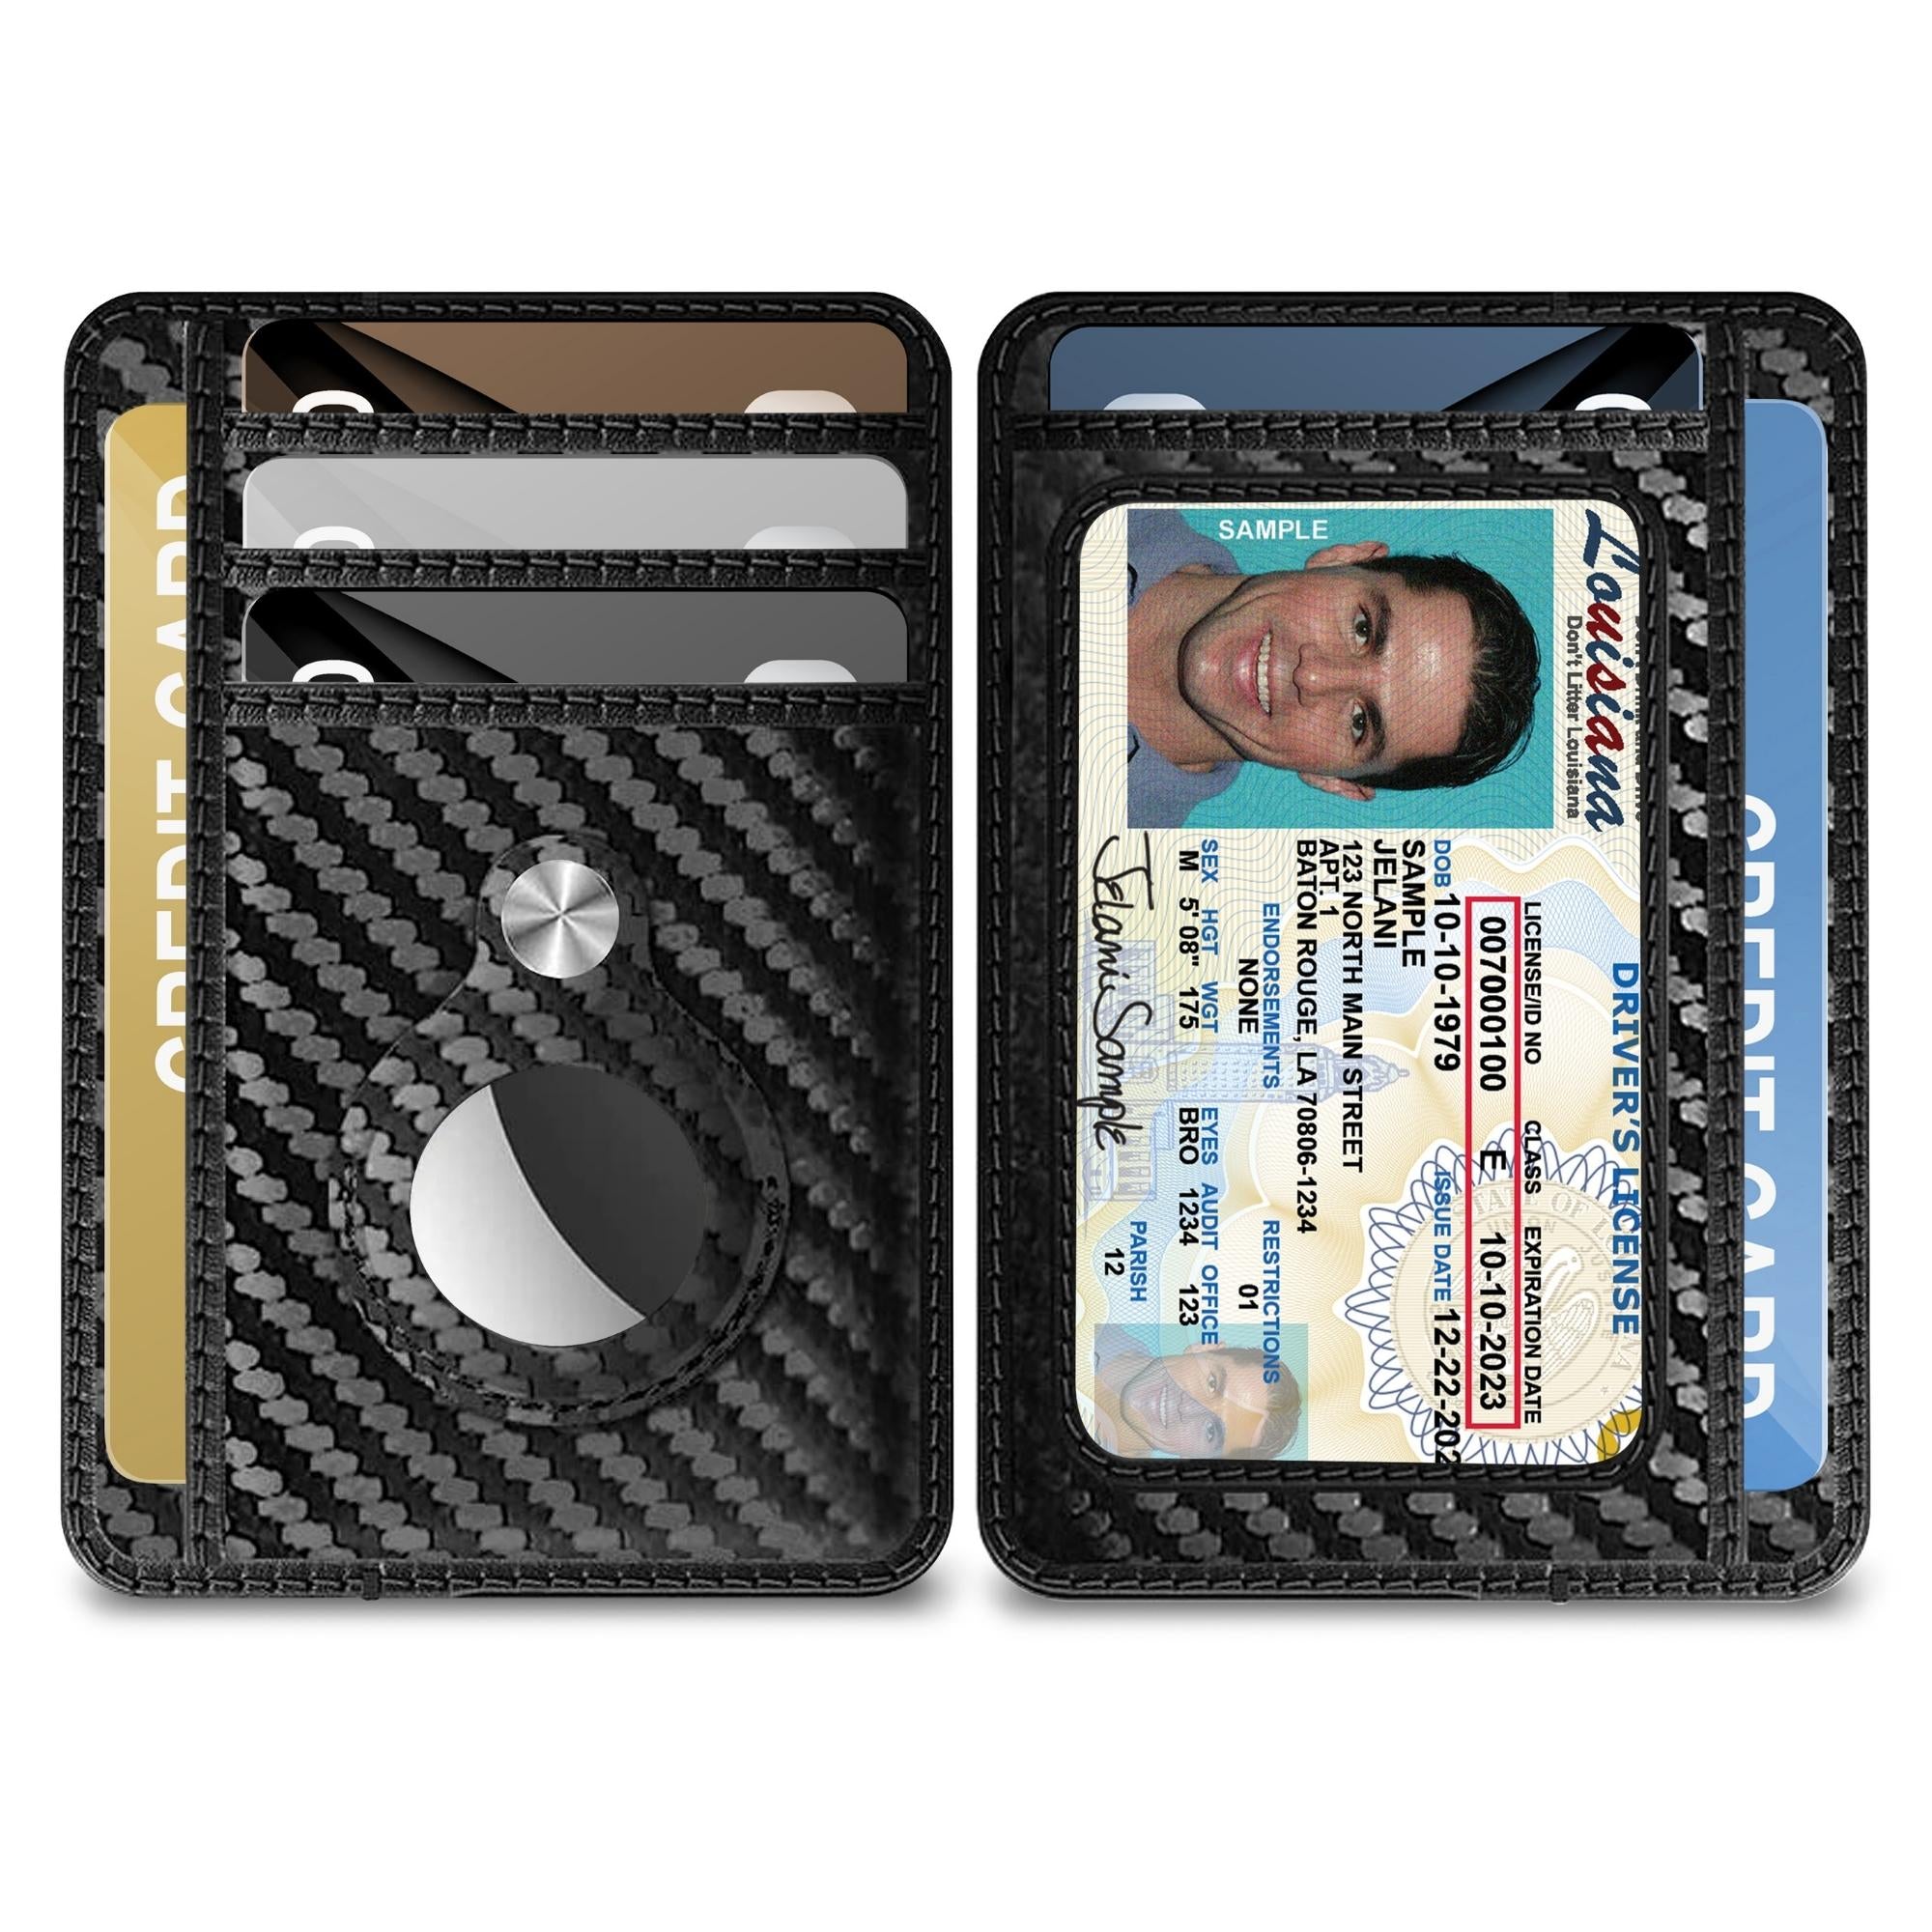 typecase Mens Wallet Card Holder: Pop Up Aluminum Case, Carbon Fiber  Leather, Smart, RFID Blocking, Slim, Minimalist, Front Pocket - 9-14 Card